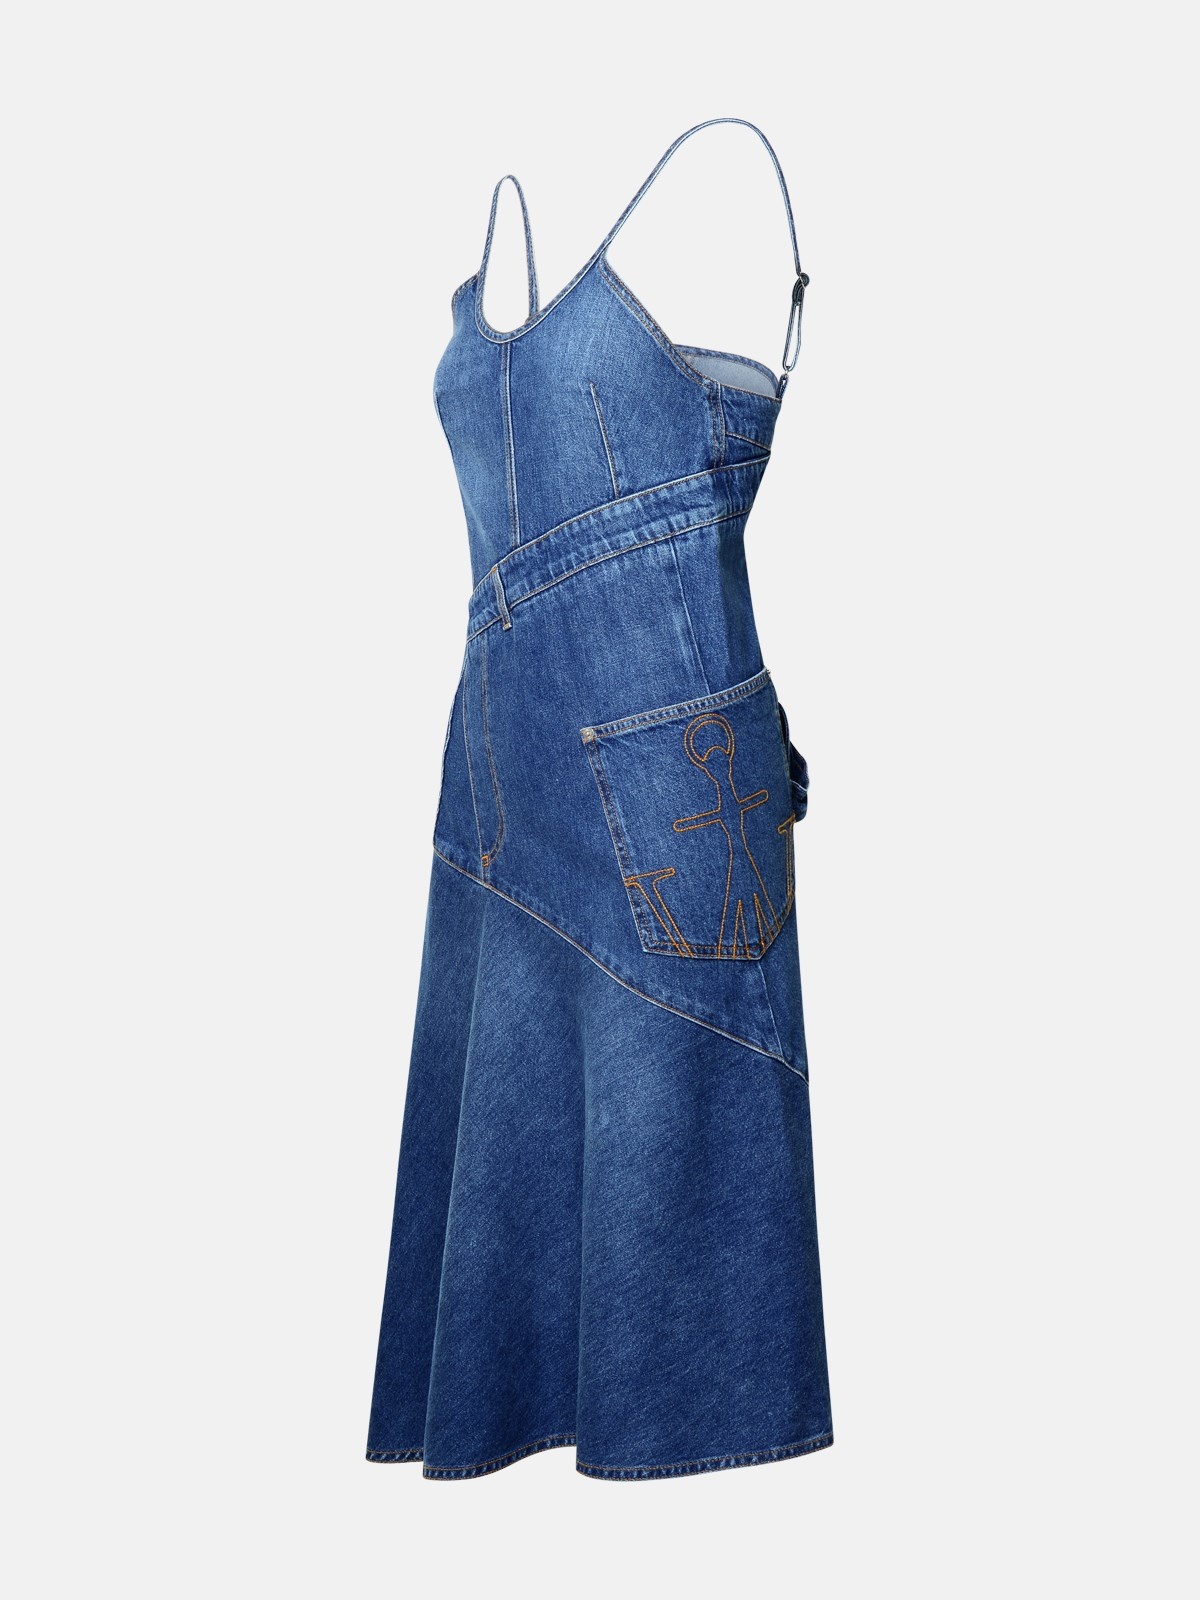 BLUE COTTON DRESS - 2